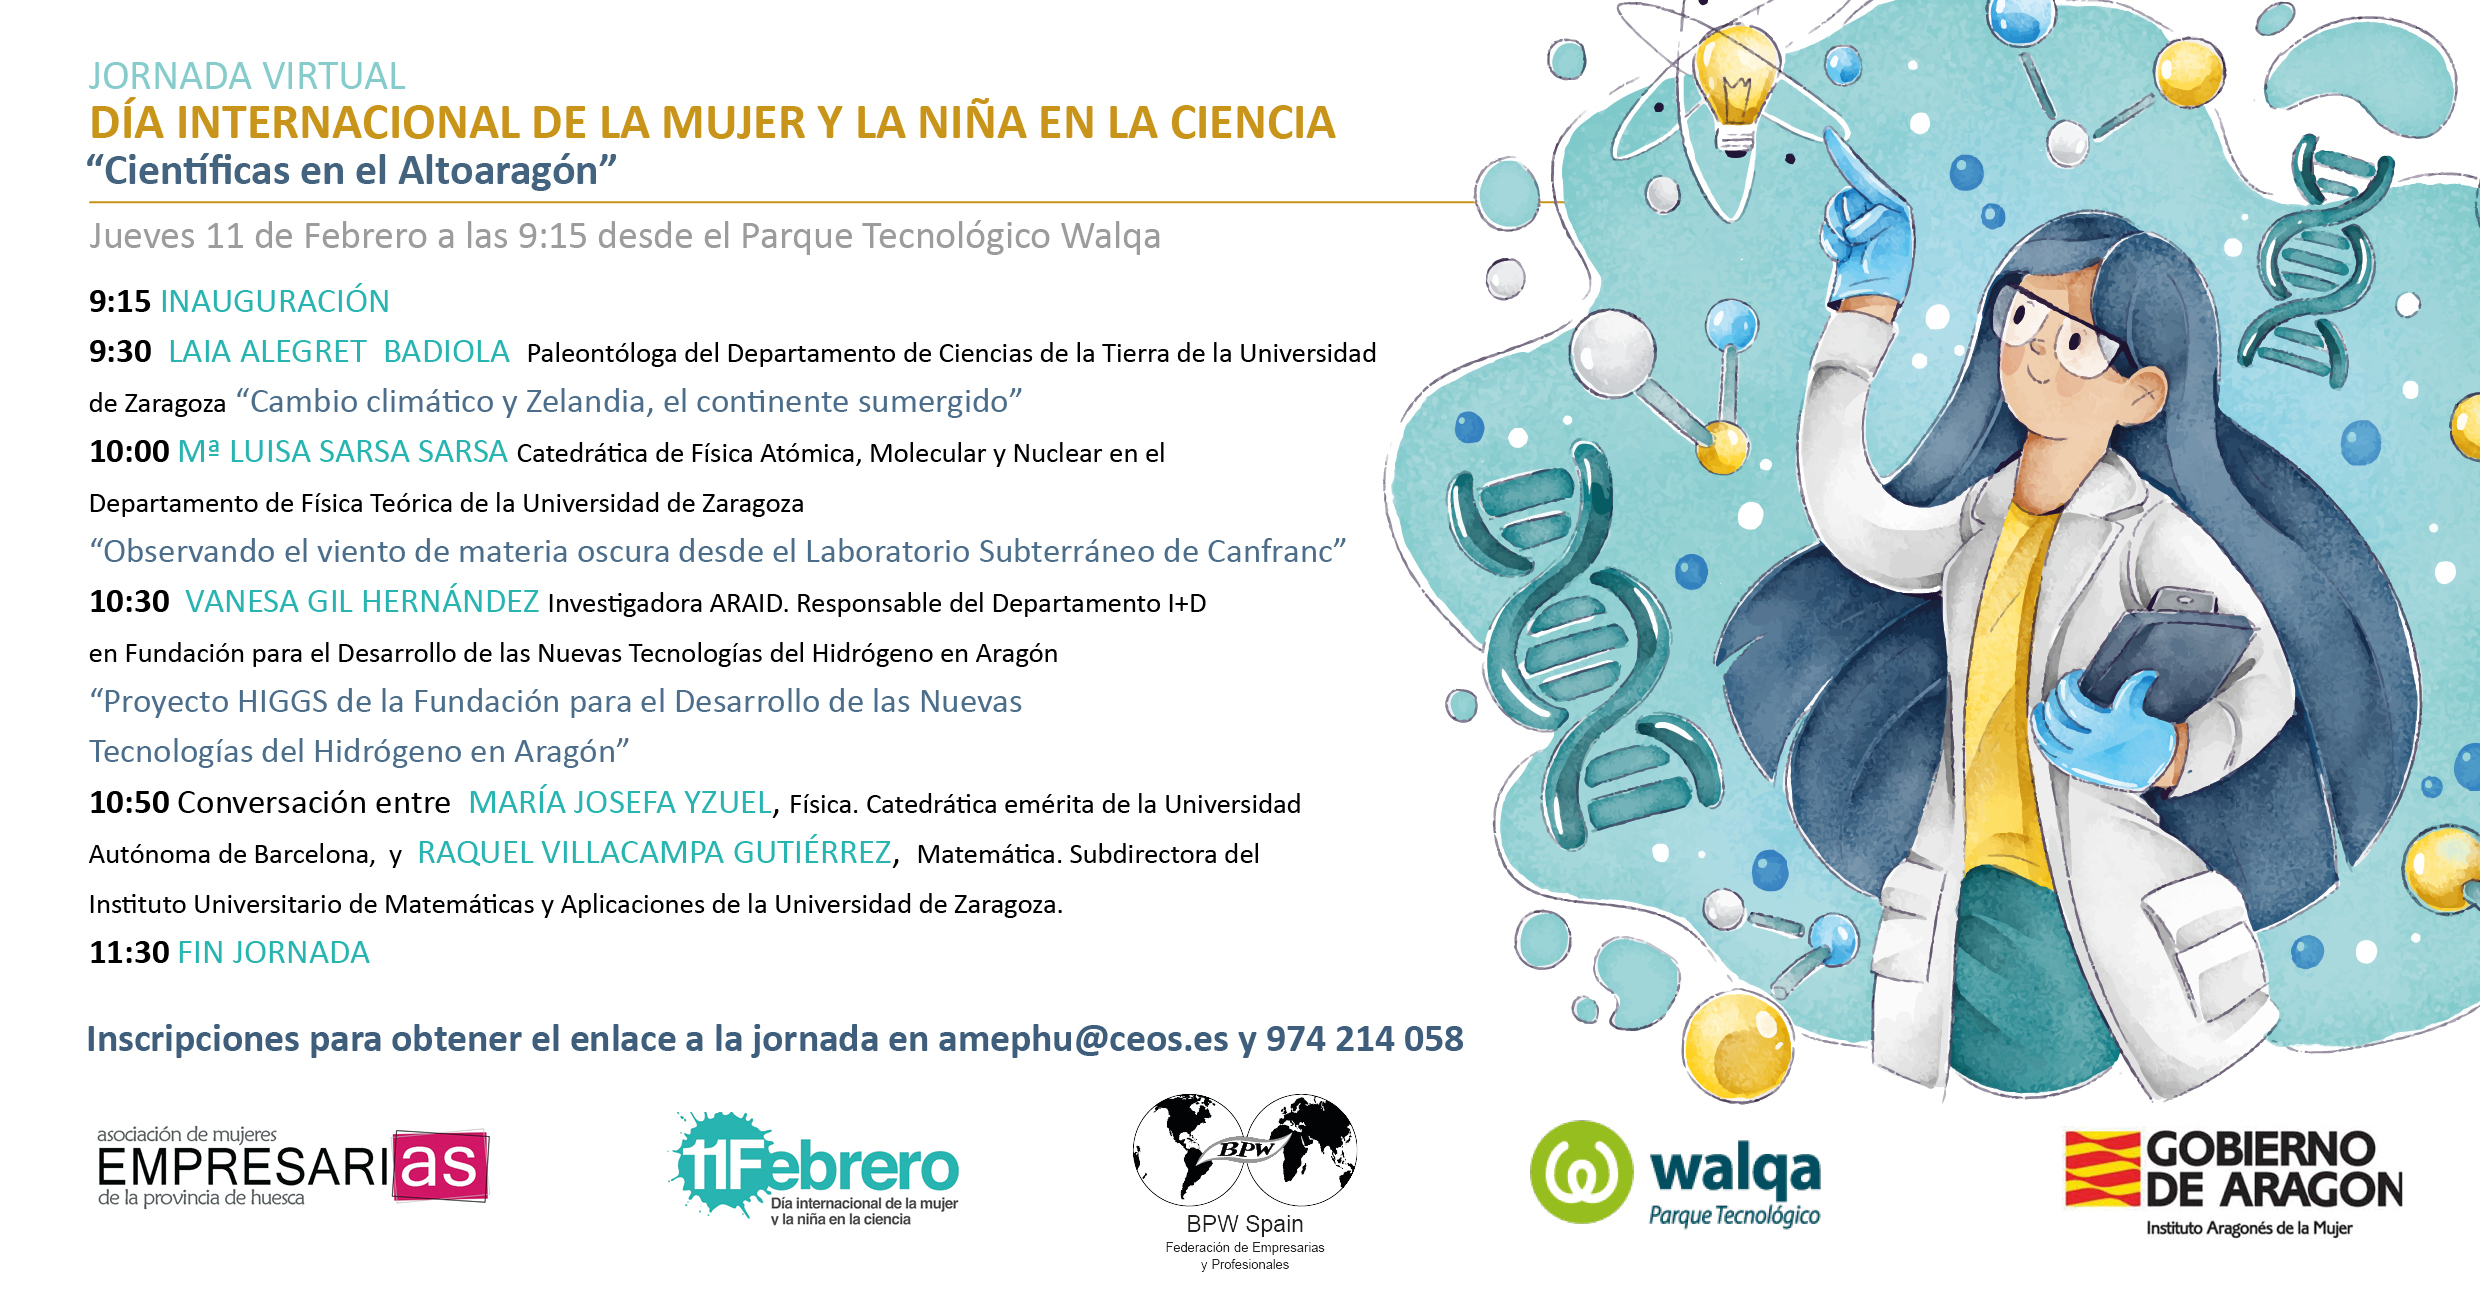 Parque Tecnológico Walqa -Jornada Virtual "Científicas en el Altoaragón"